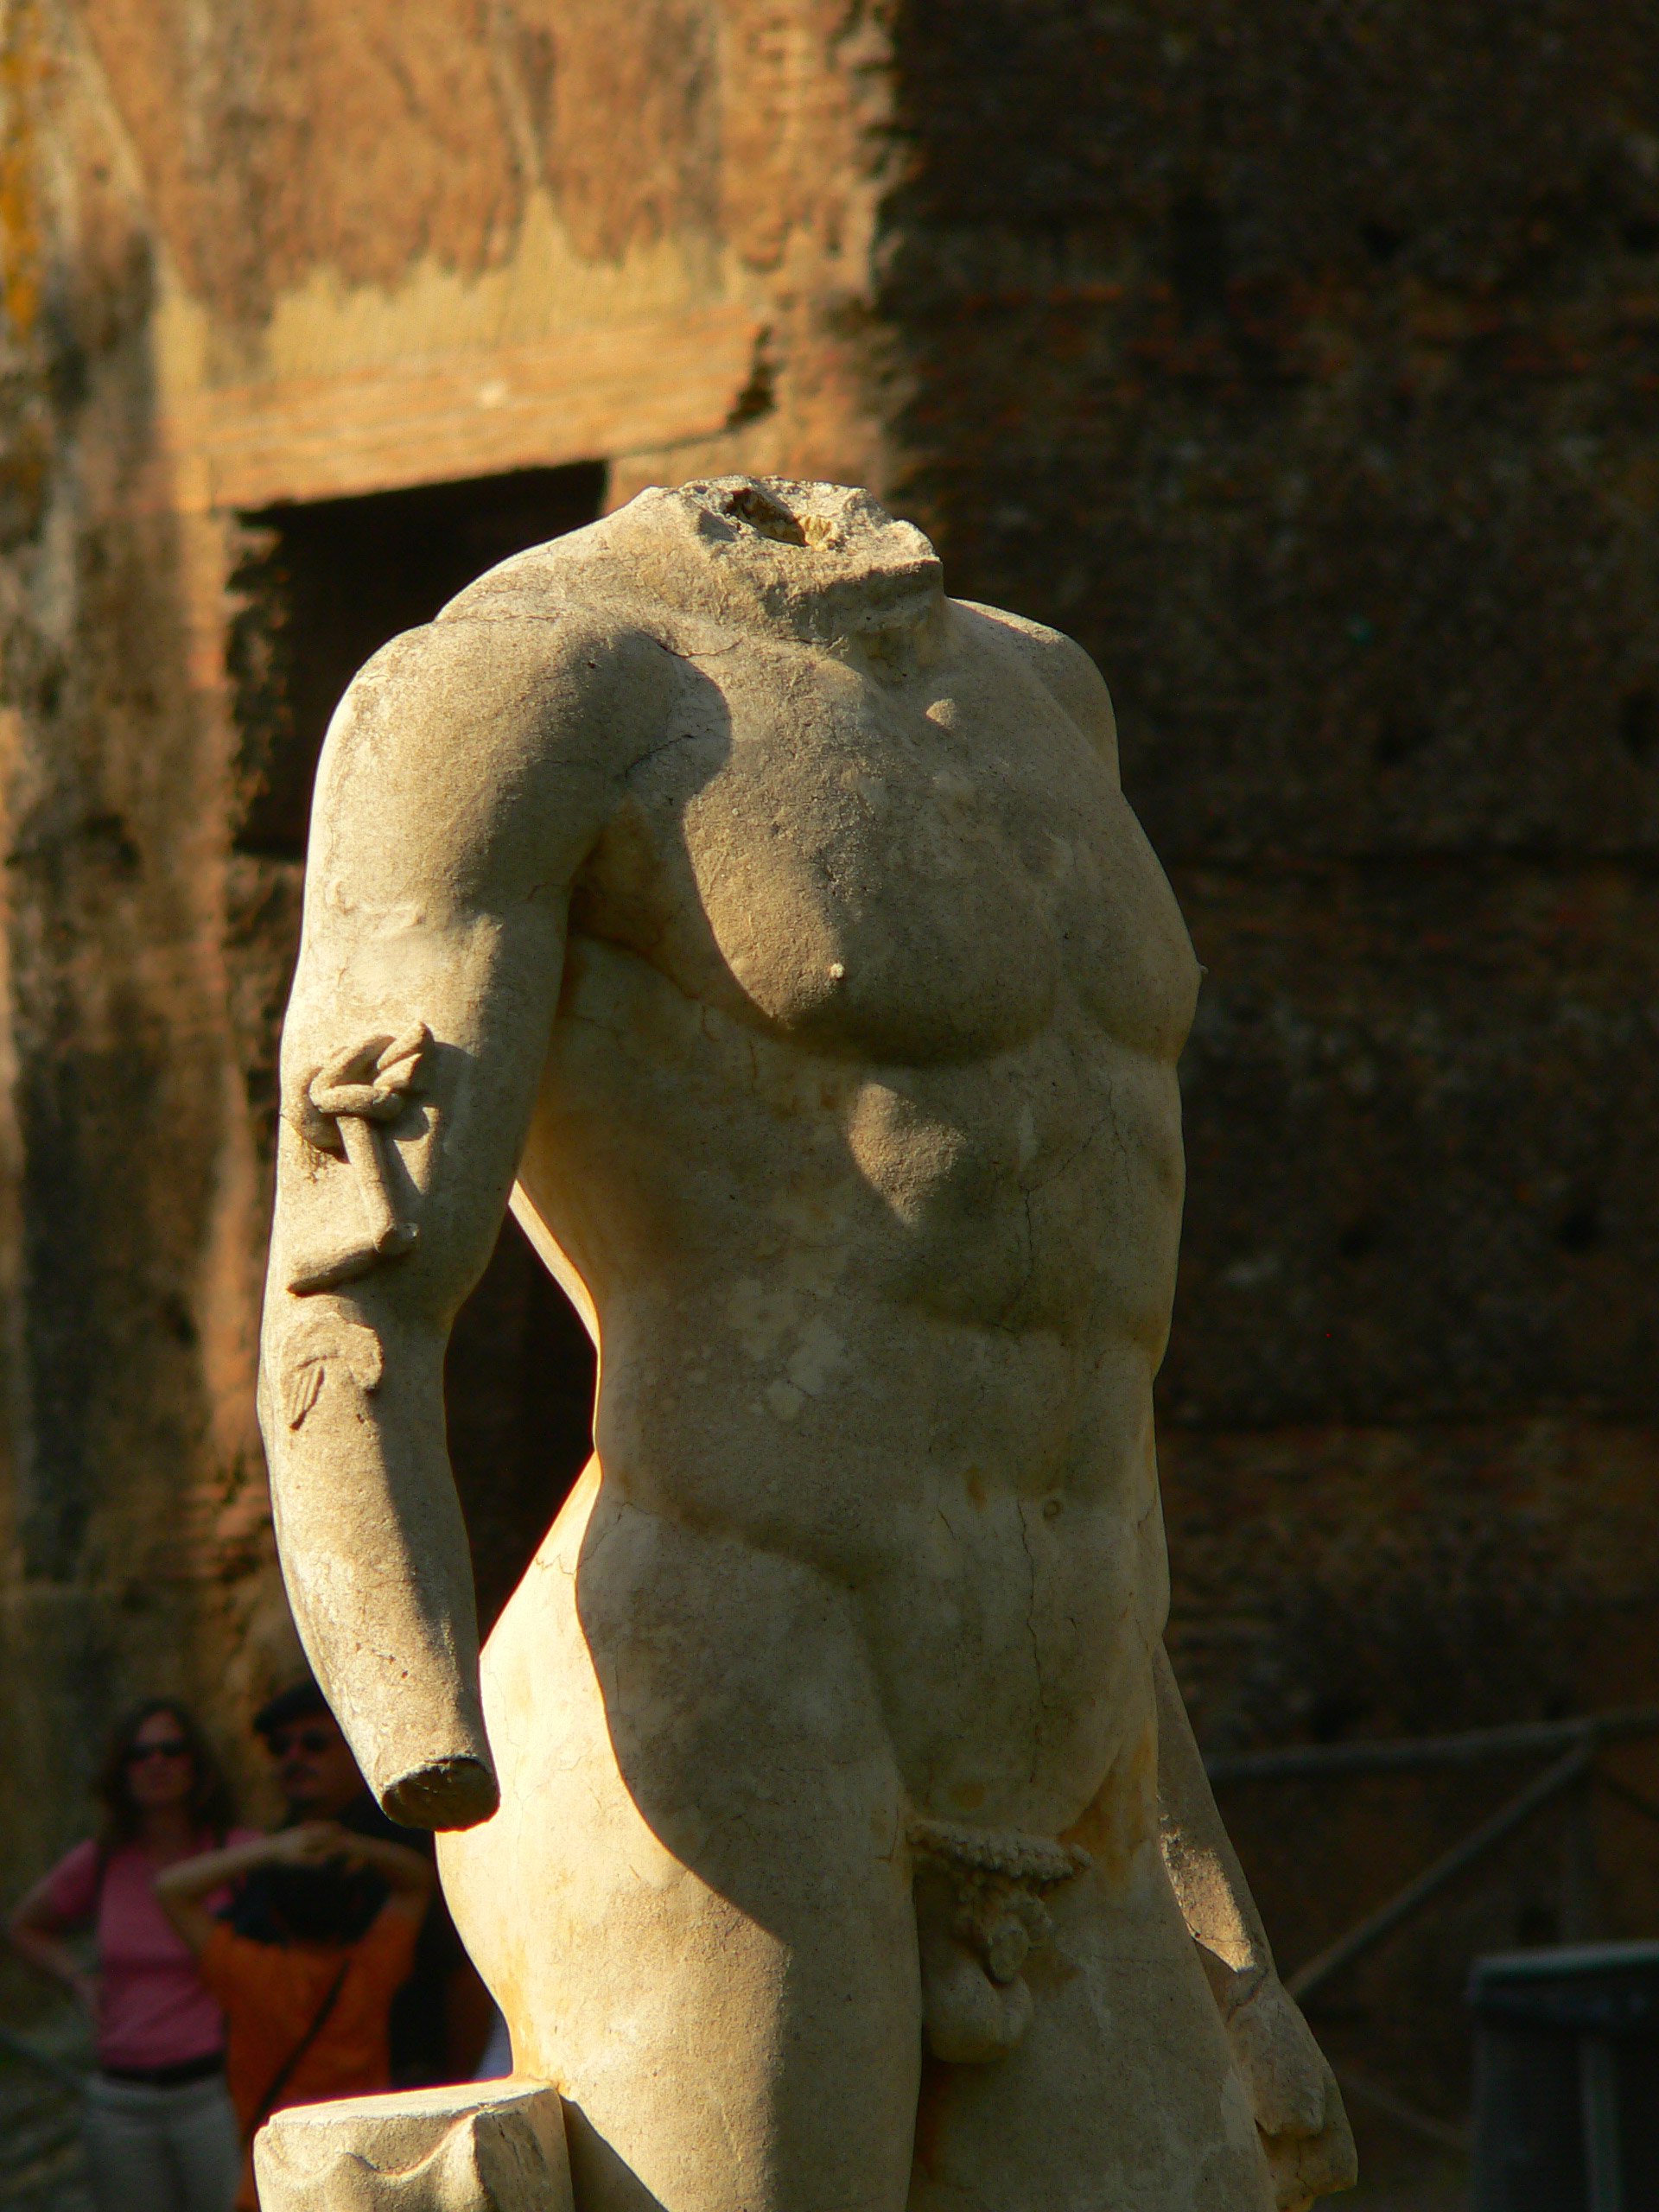 Rzym, Tivoli, posąg antyczny, Canopa, Włochy, antyk, podróże, podróże po Europie, fotografia Monika Turska